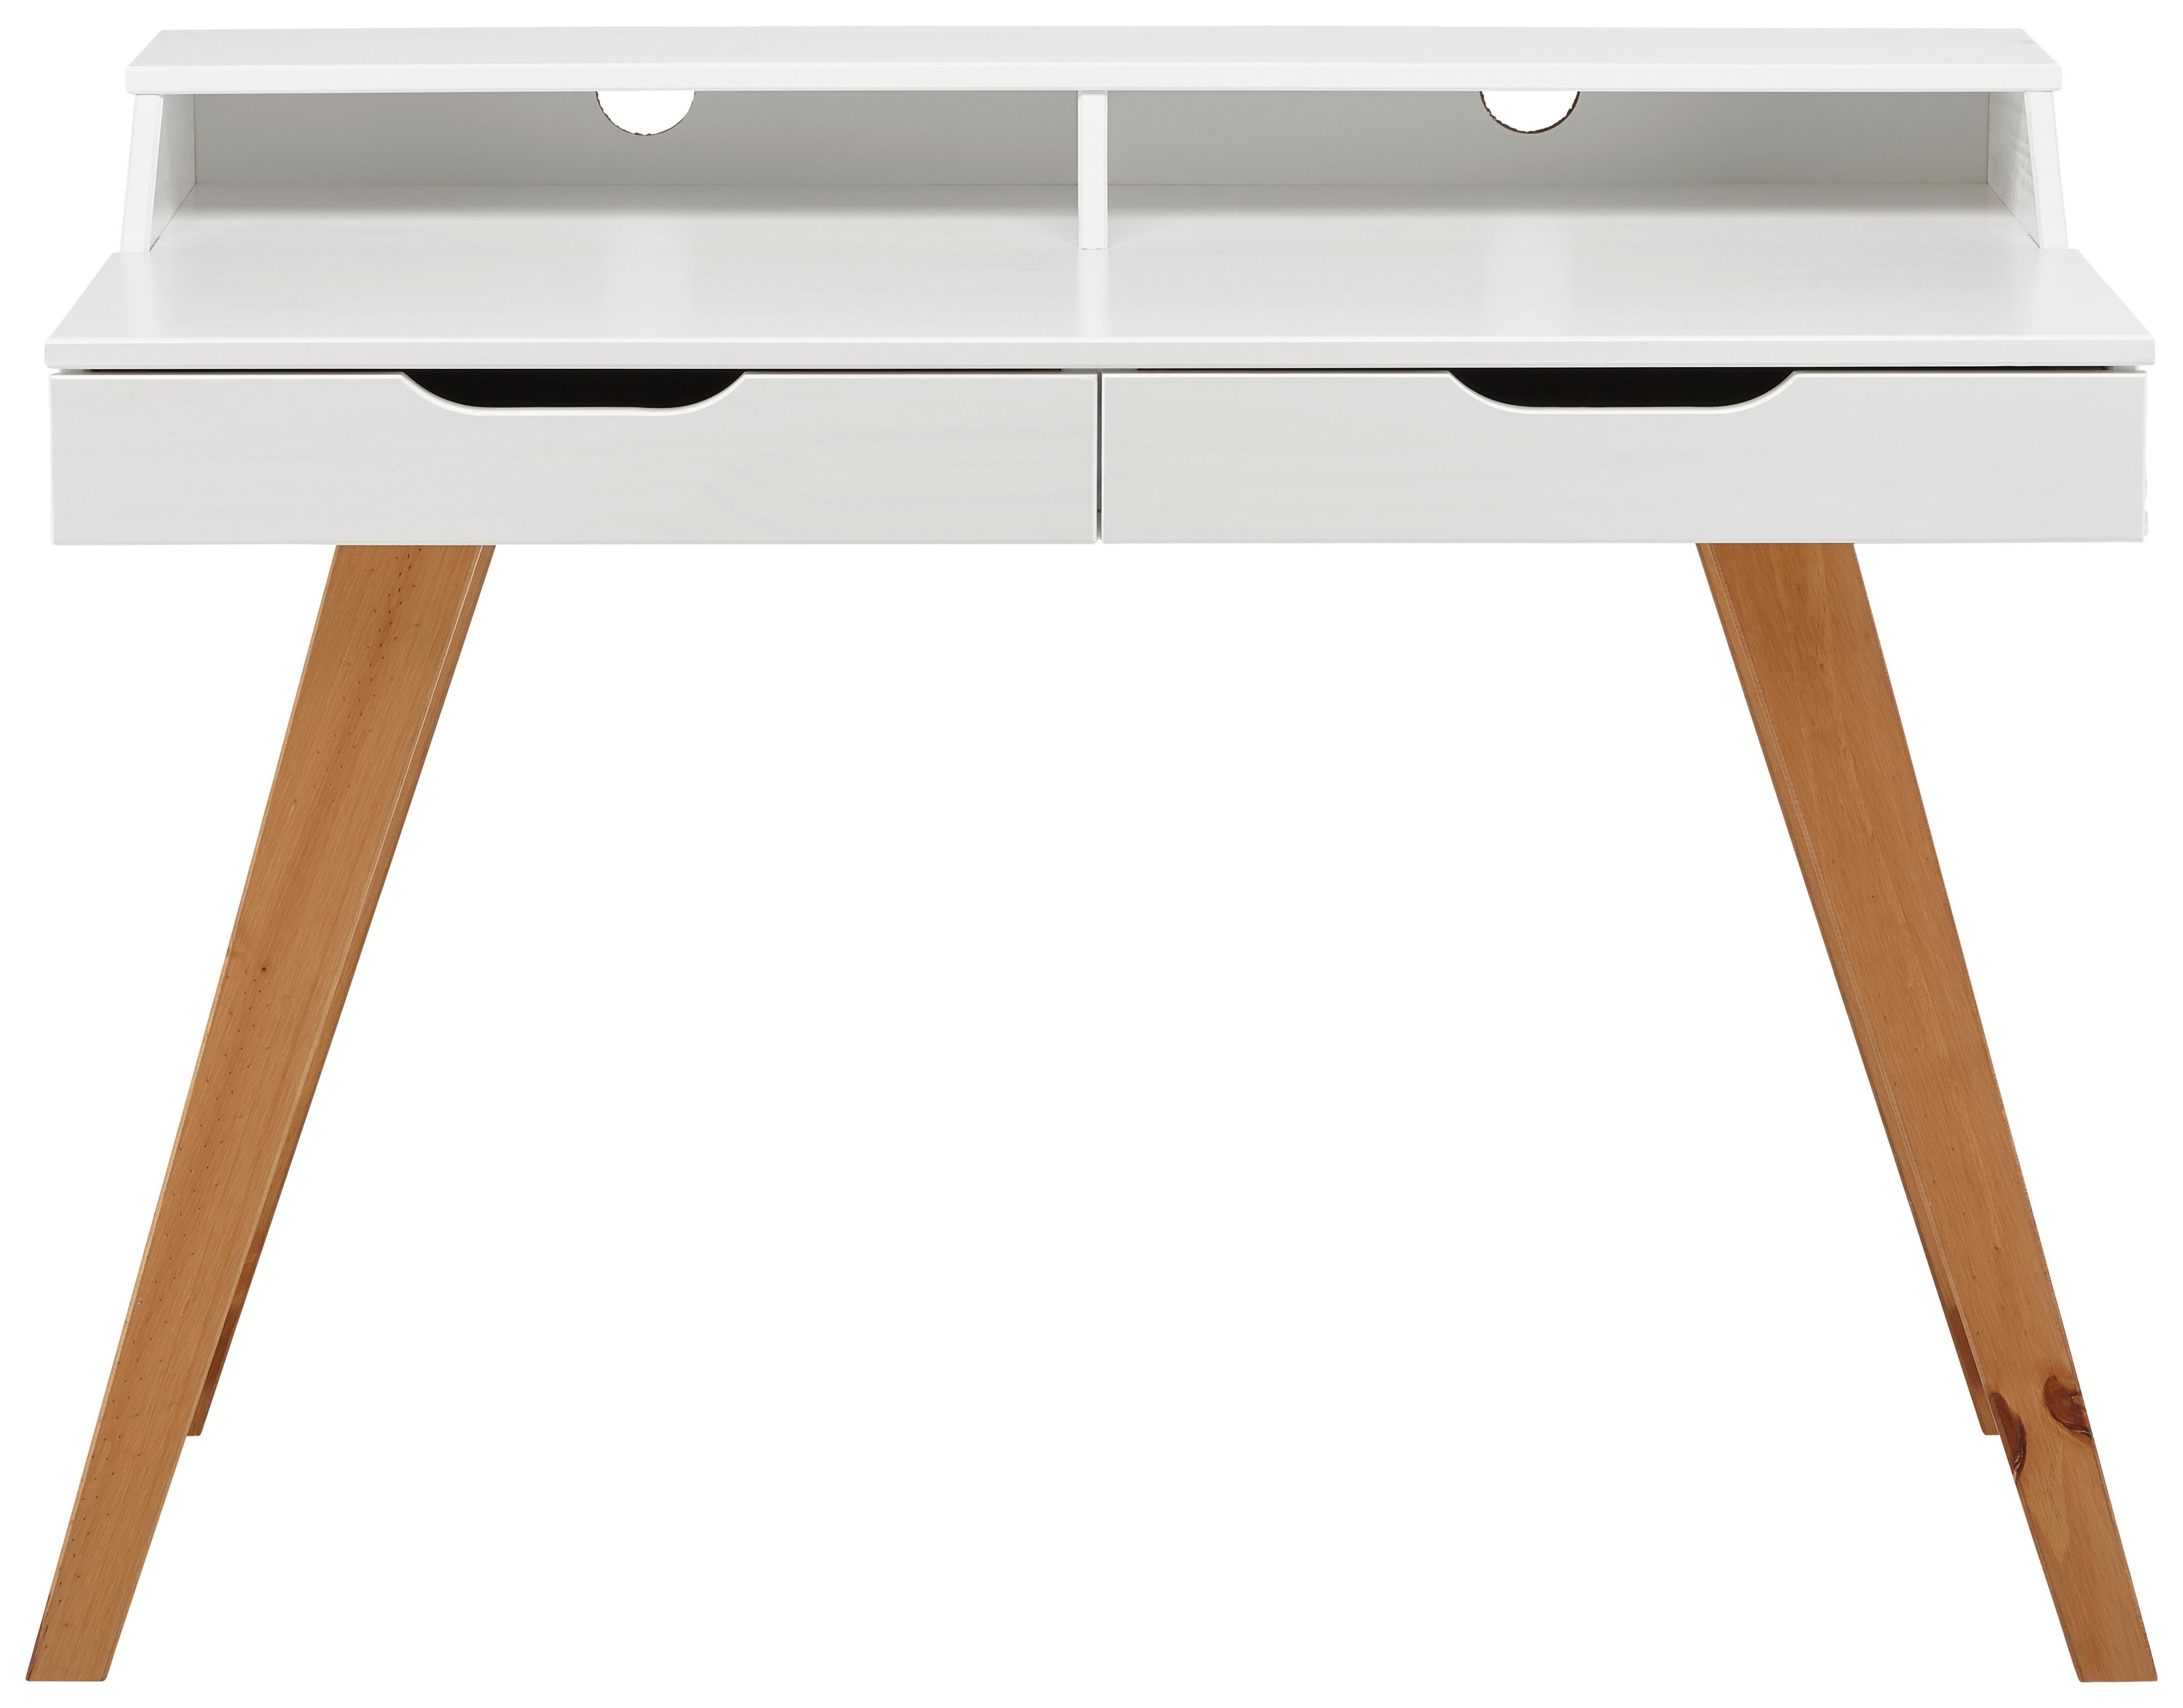 Schreibtisch in Weiss/Walnuss - Weiss/Walnussfarben, Design, Holz/Holzwerkstoff (110/85/58cm) - Modern Living